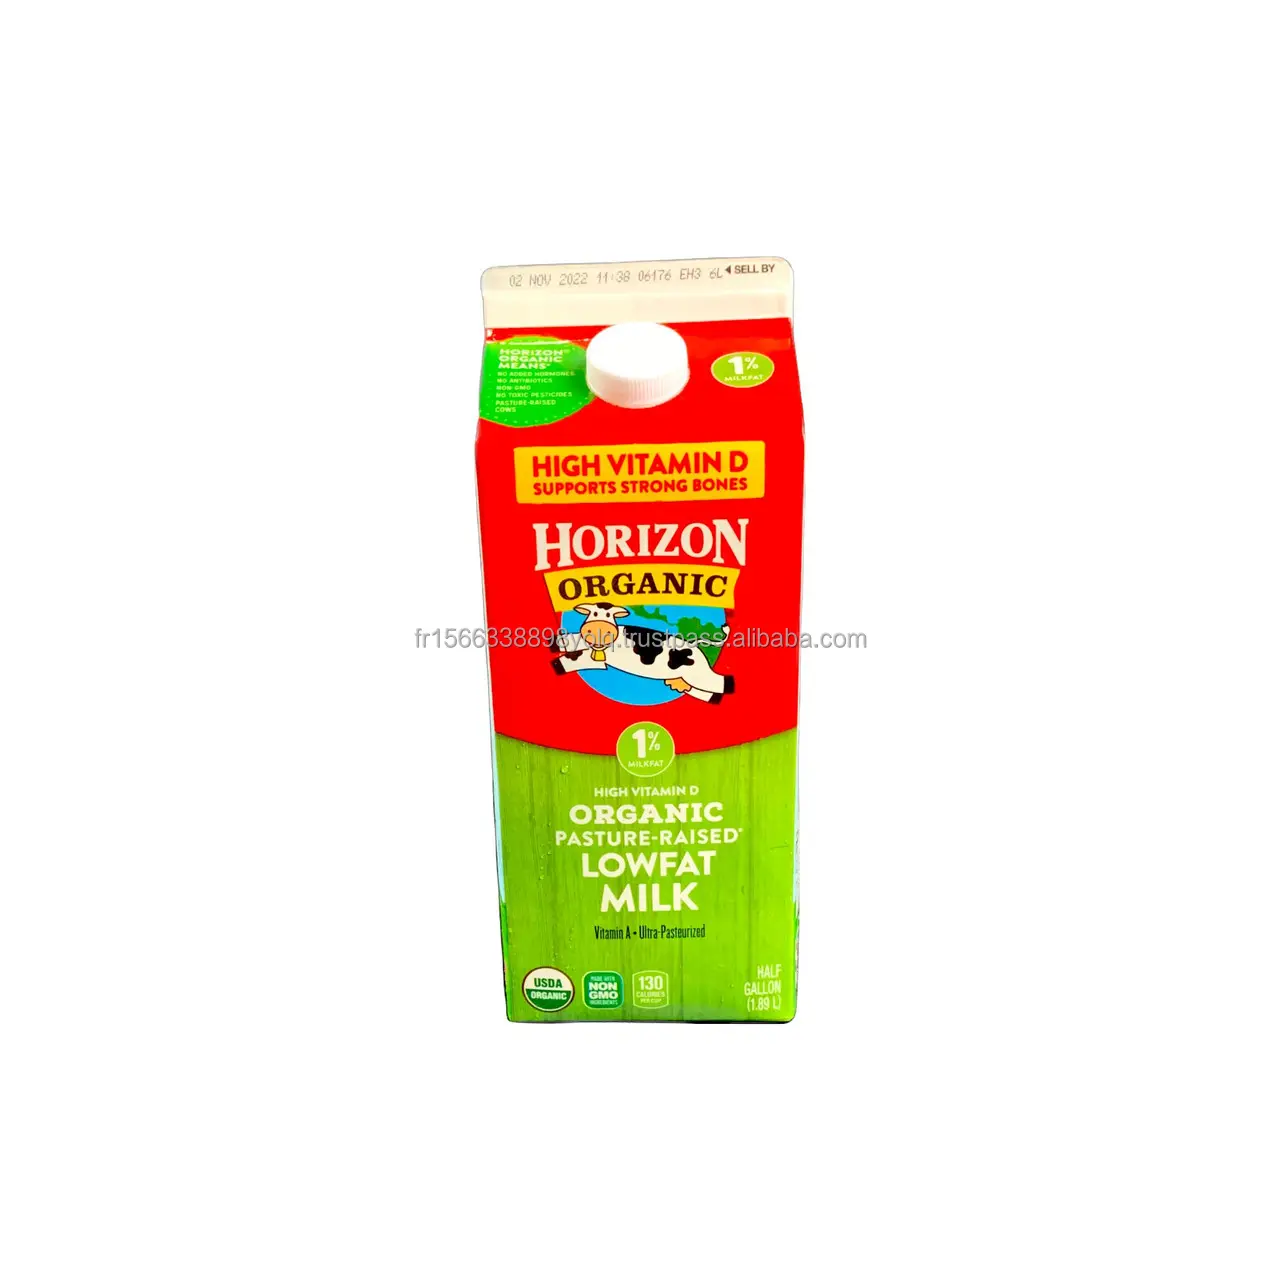 Ufuk organik süt, organik, % 2% azaltılmış yağ